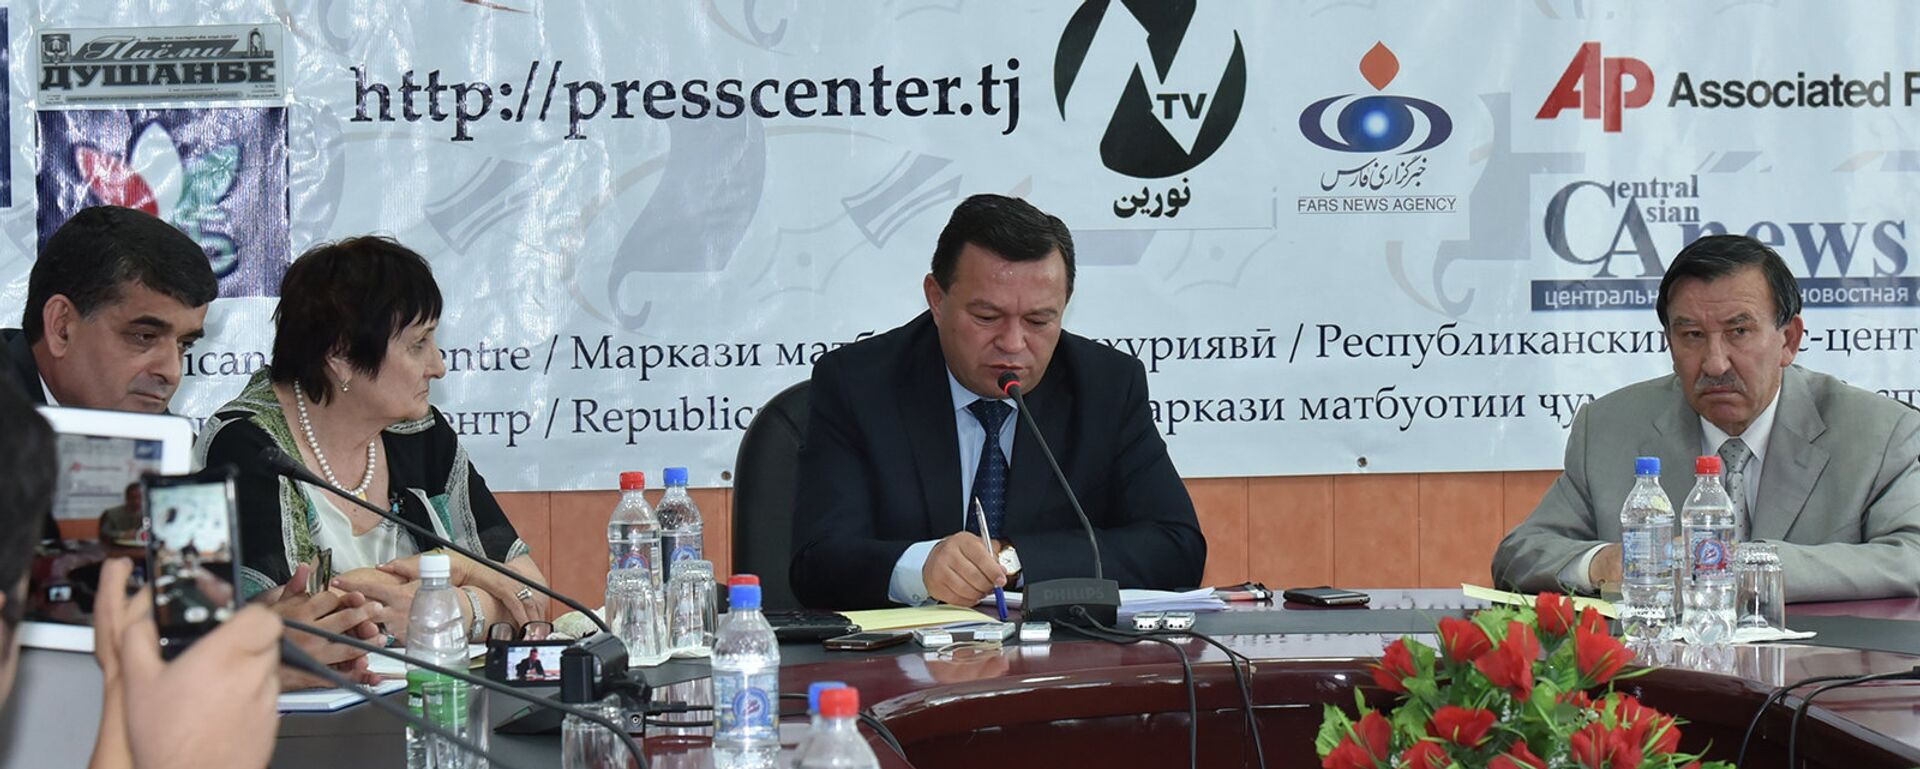 Пресс-конференция в АН РТ 9 июля 2015 года - Sputnik Таджикистан, 1920, 29.07.2019